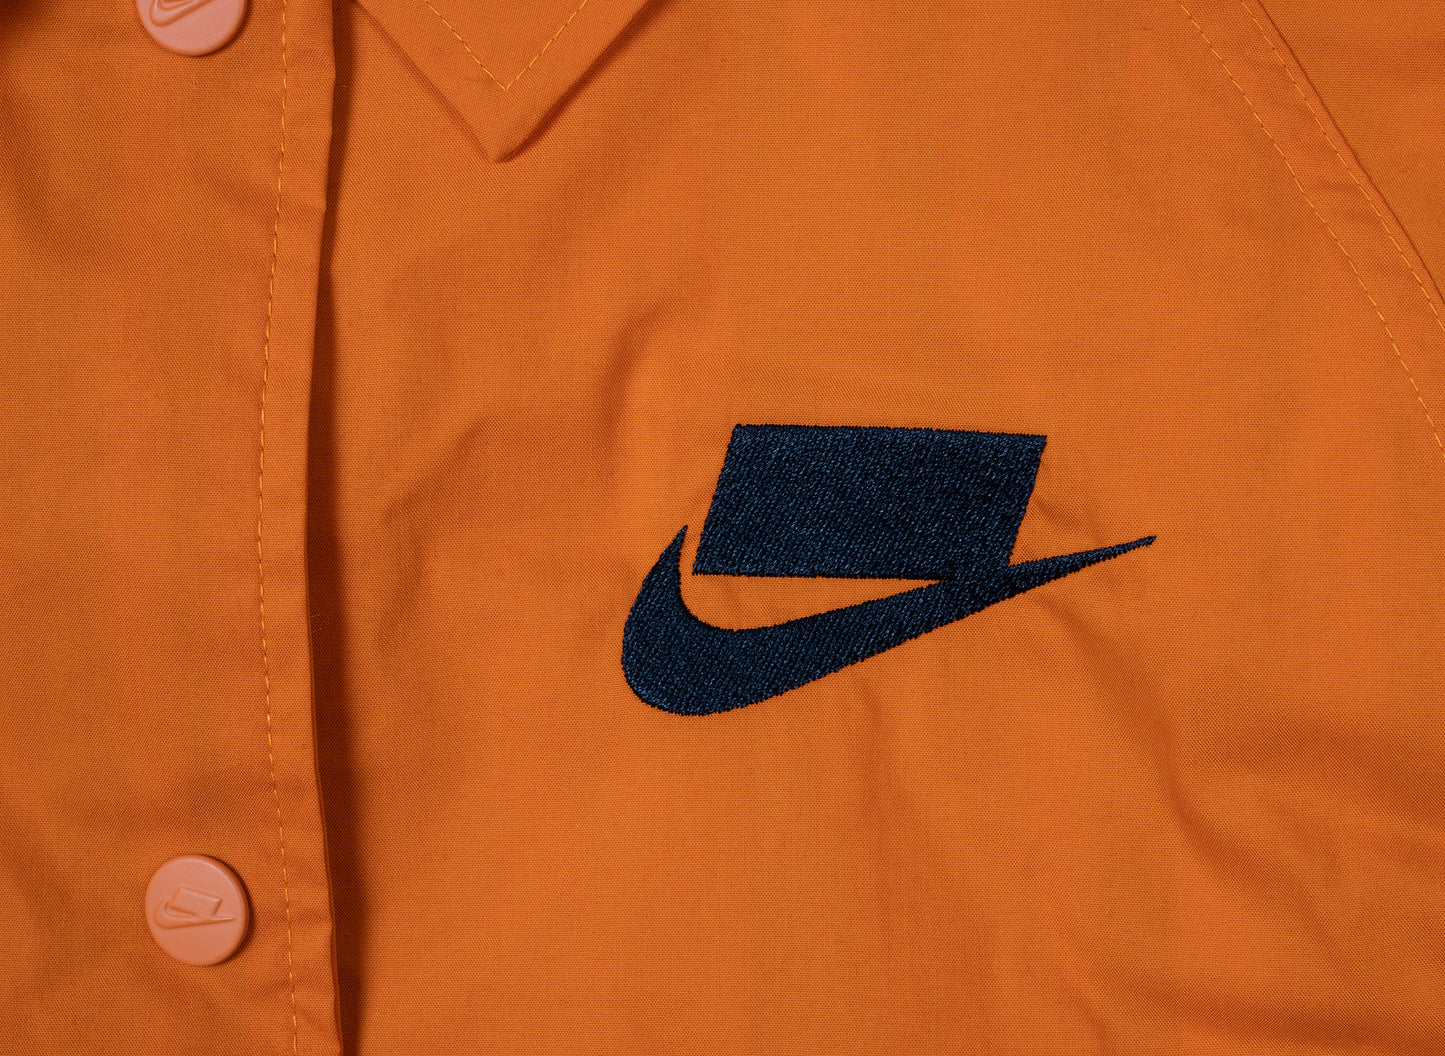 Women's Nike Sportswear Woven Jacket